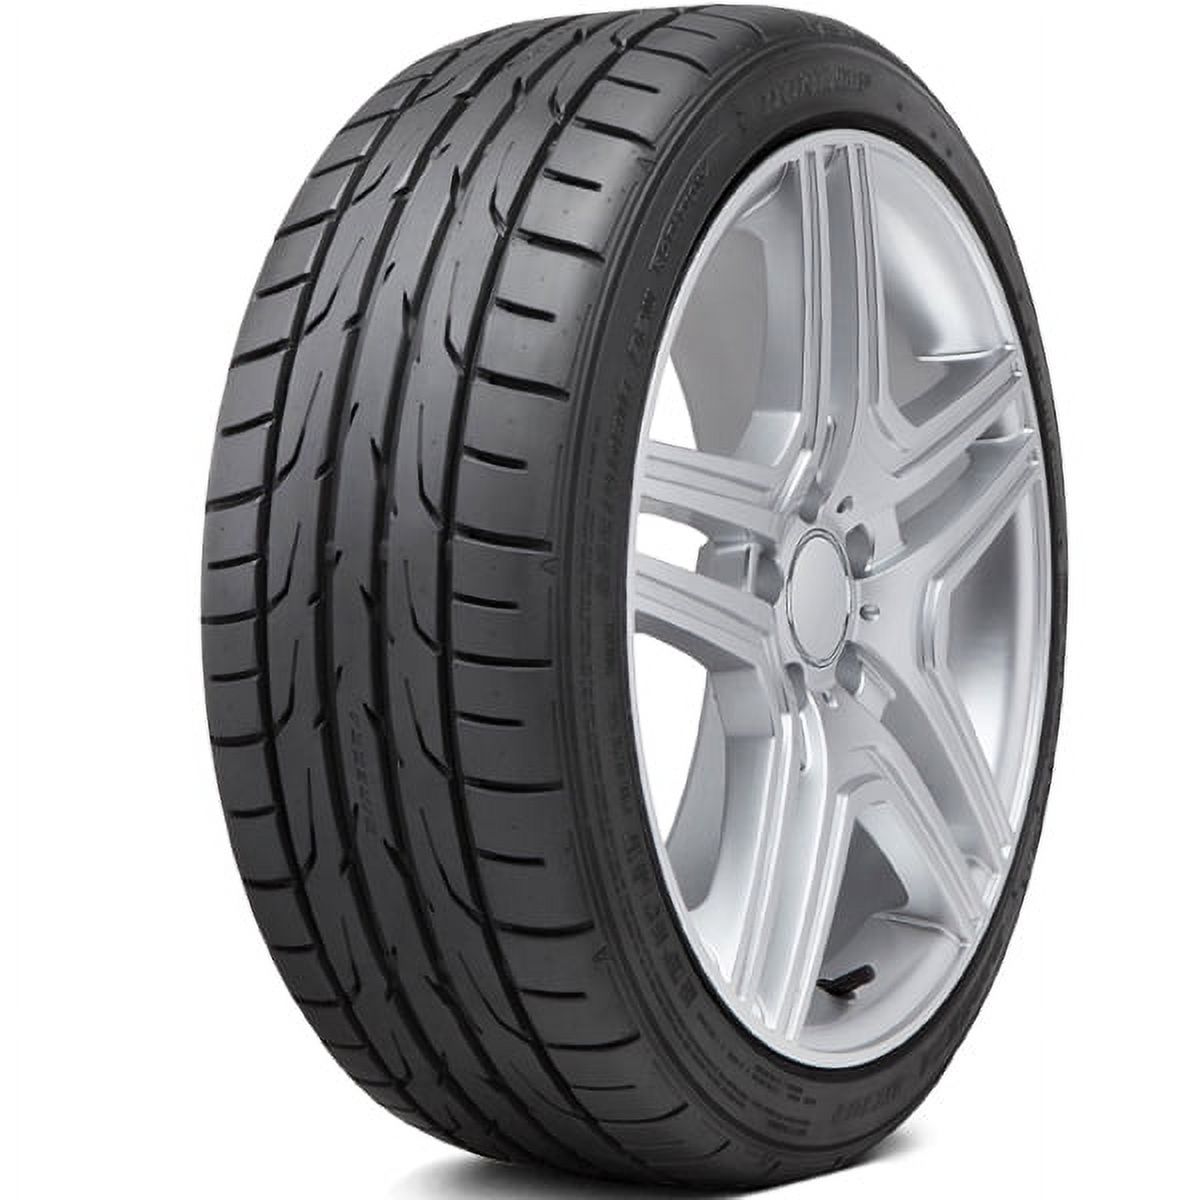 Dunlop Direzza DZ102 275/35R18 95 W Tire